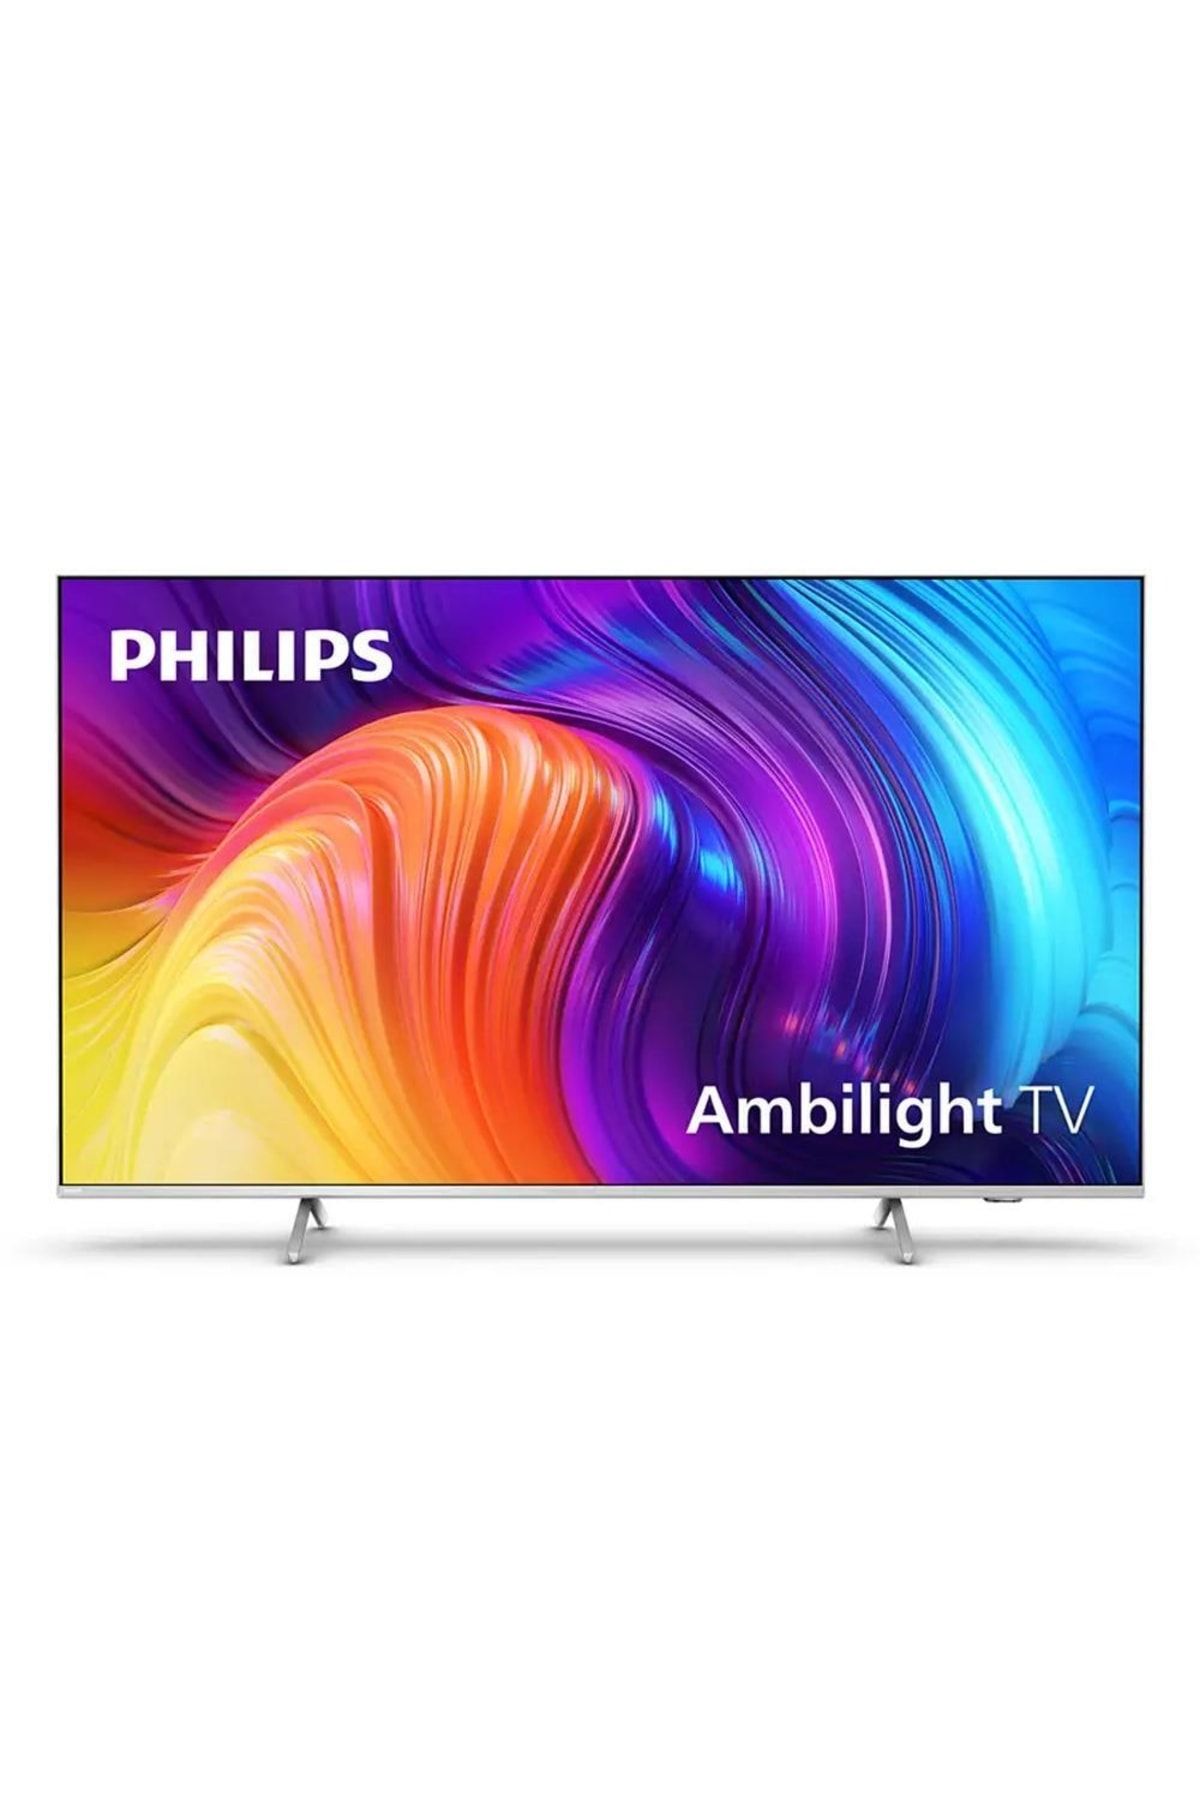 Philips Televizyon Fiyatları & TV Modelleri - Trendyol